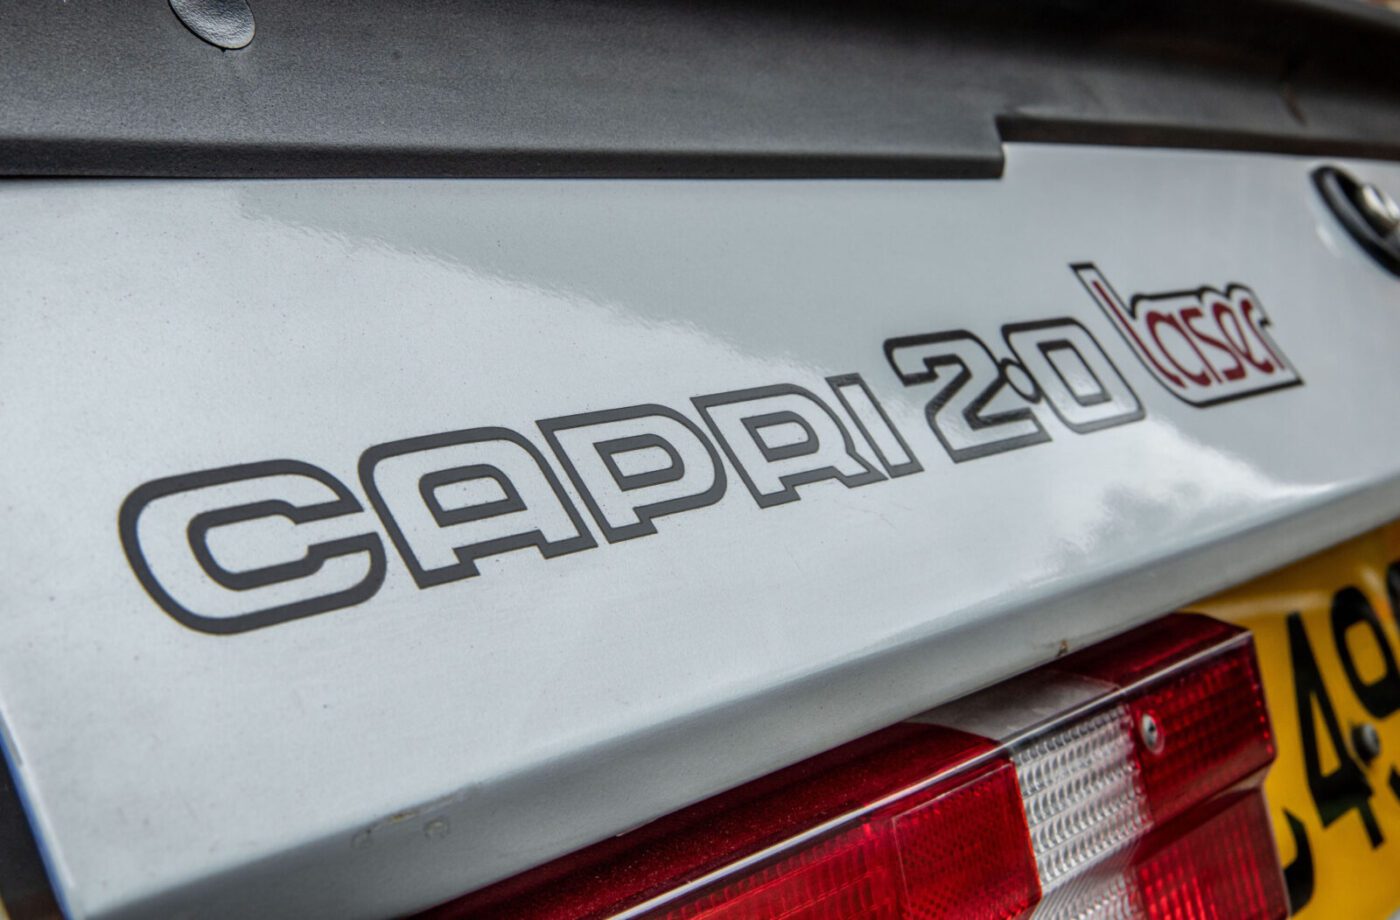 Ford Capri Laser badge